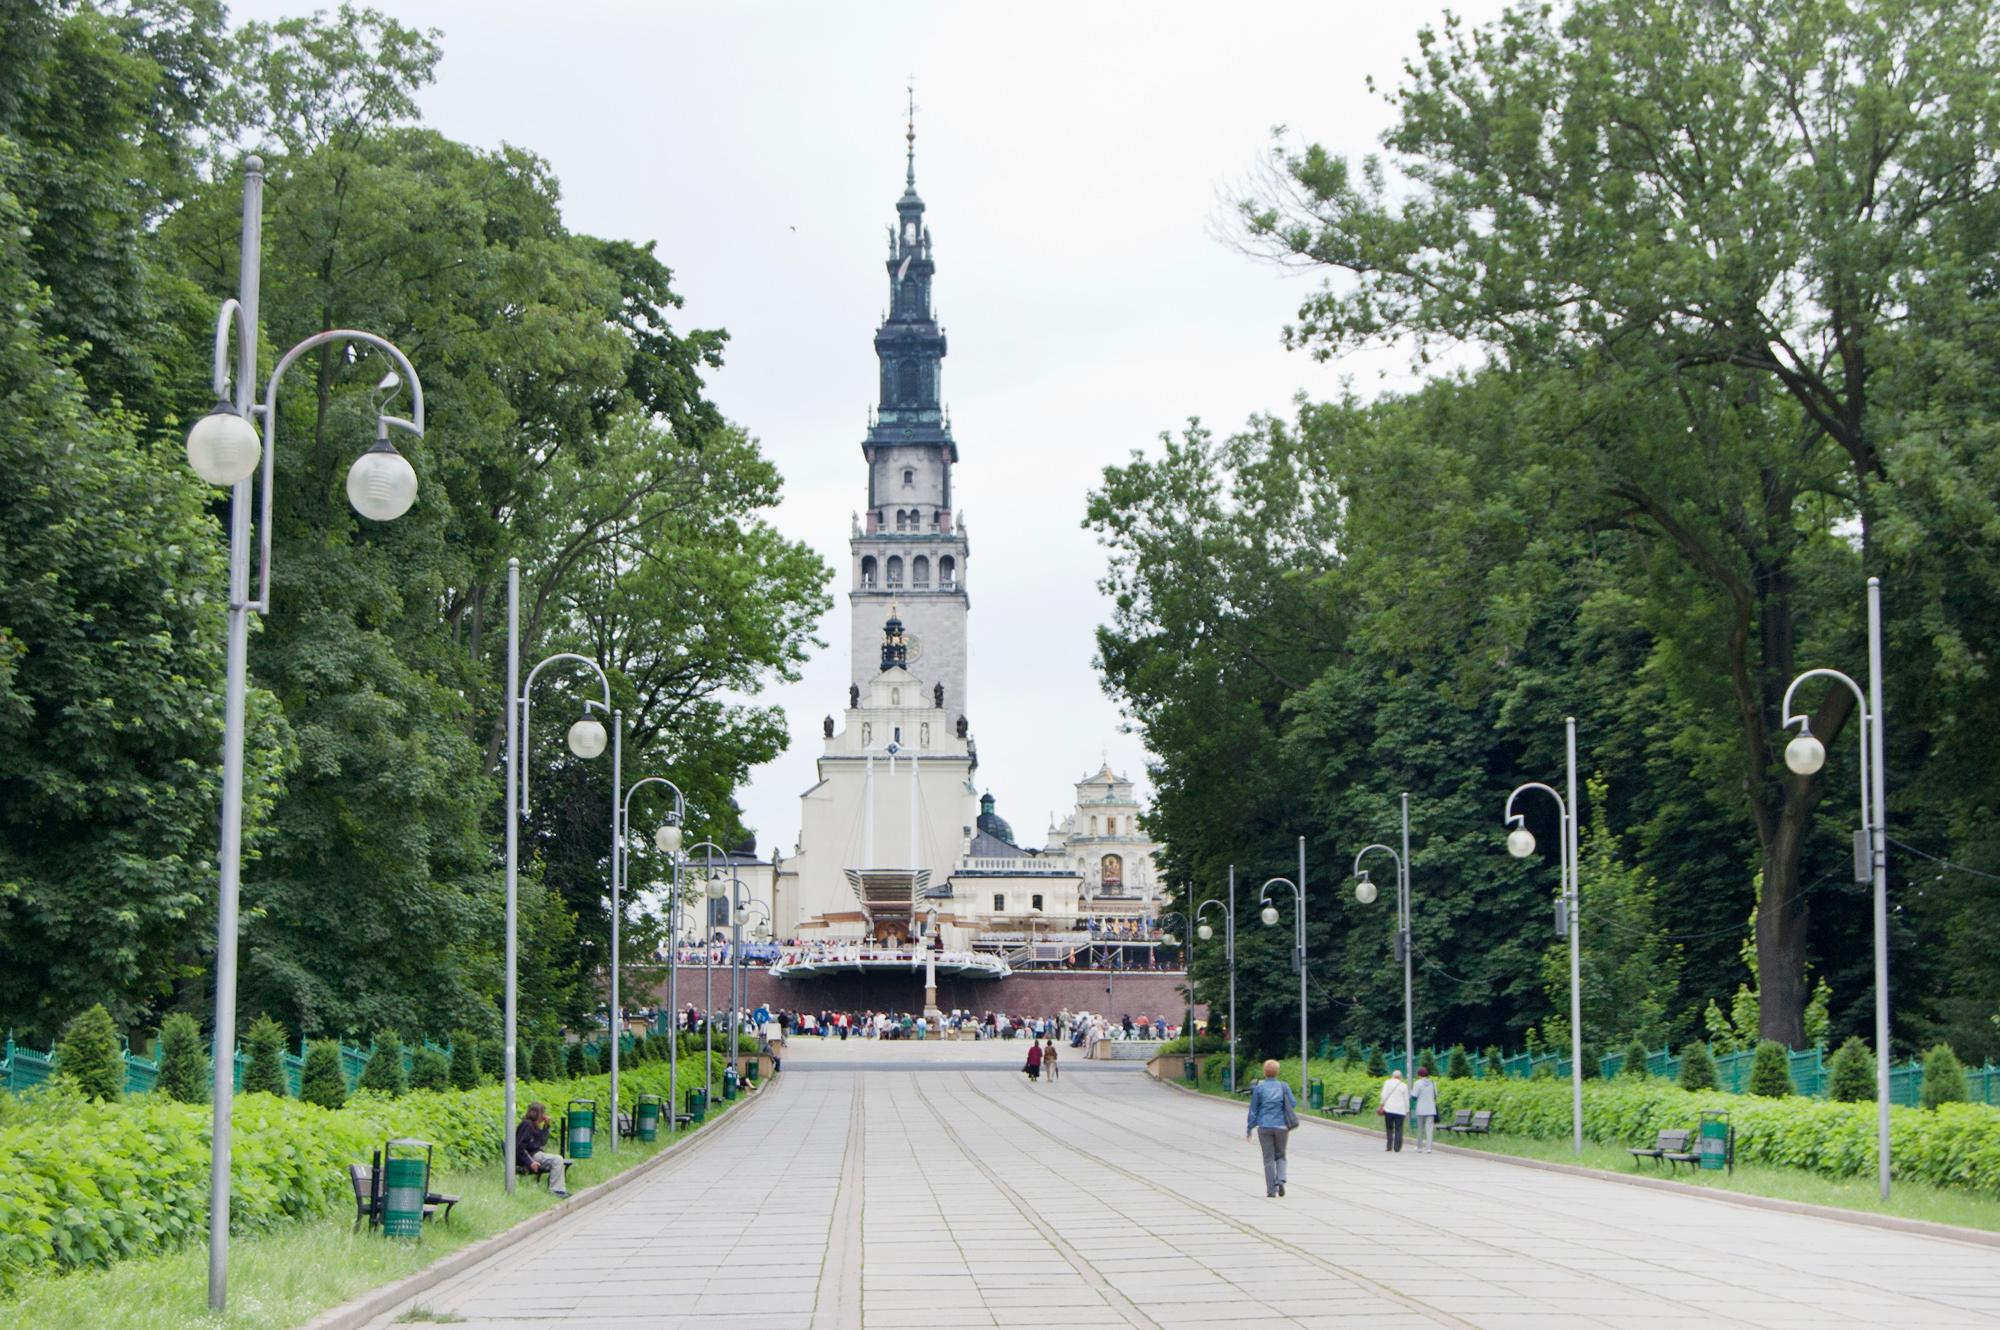 Sanktuarium Matki Bożej Częstochowskiej